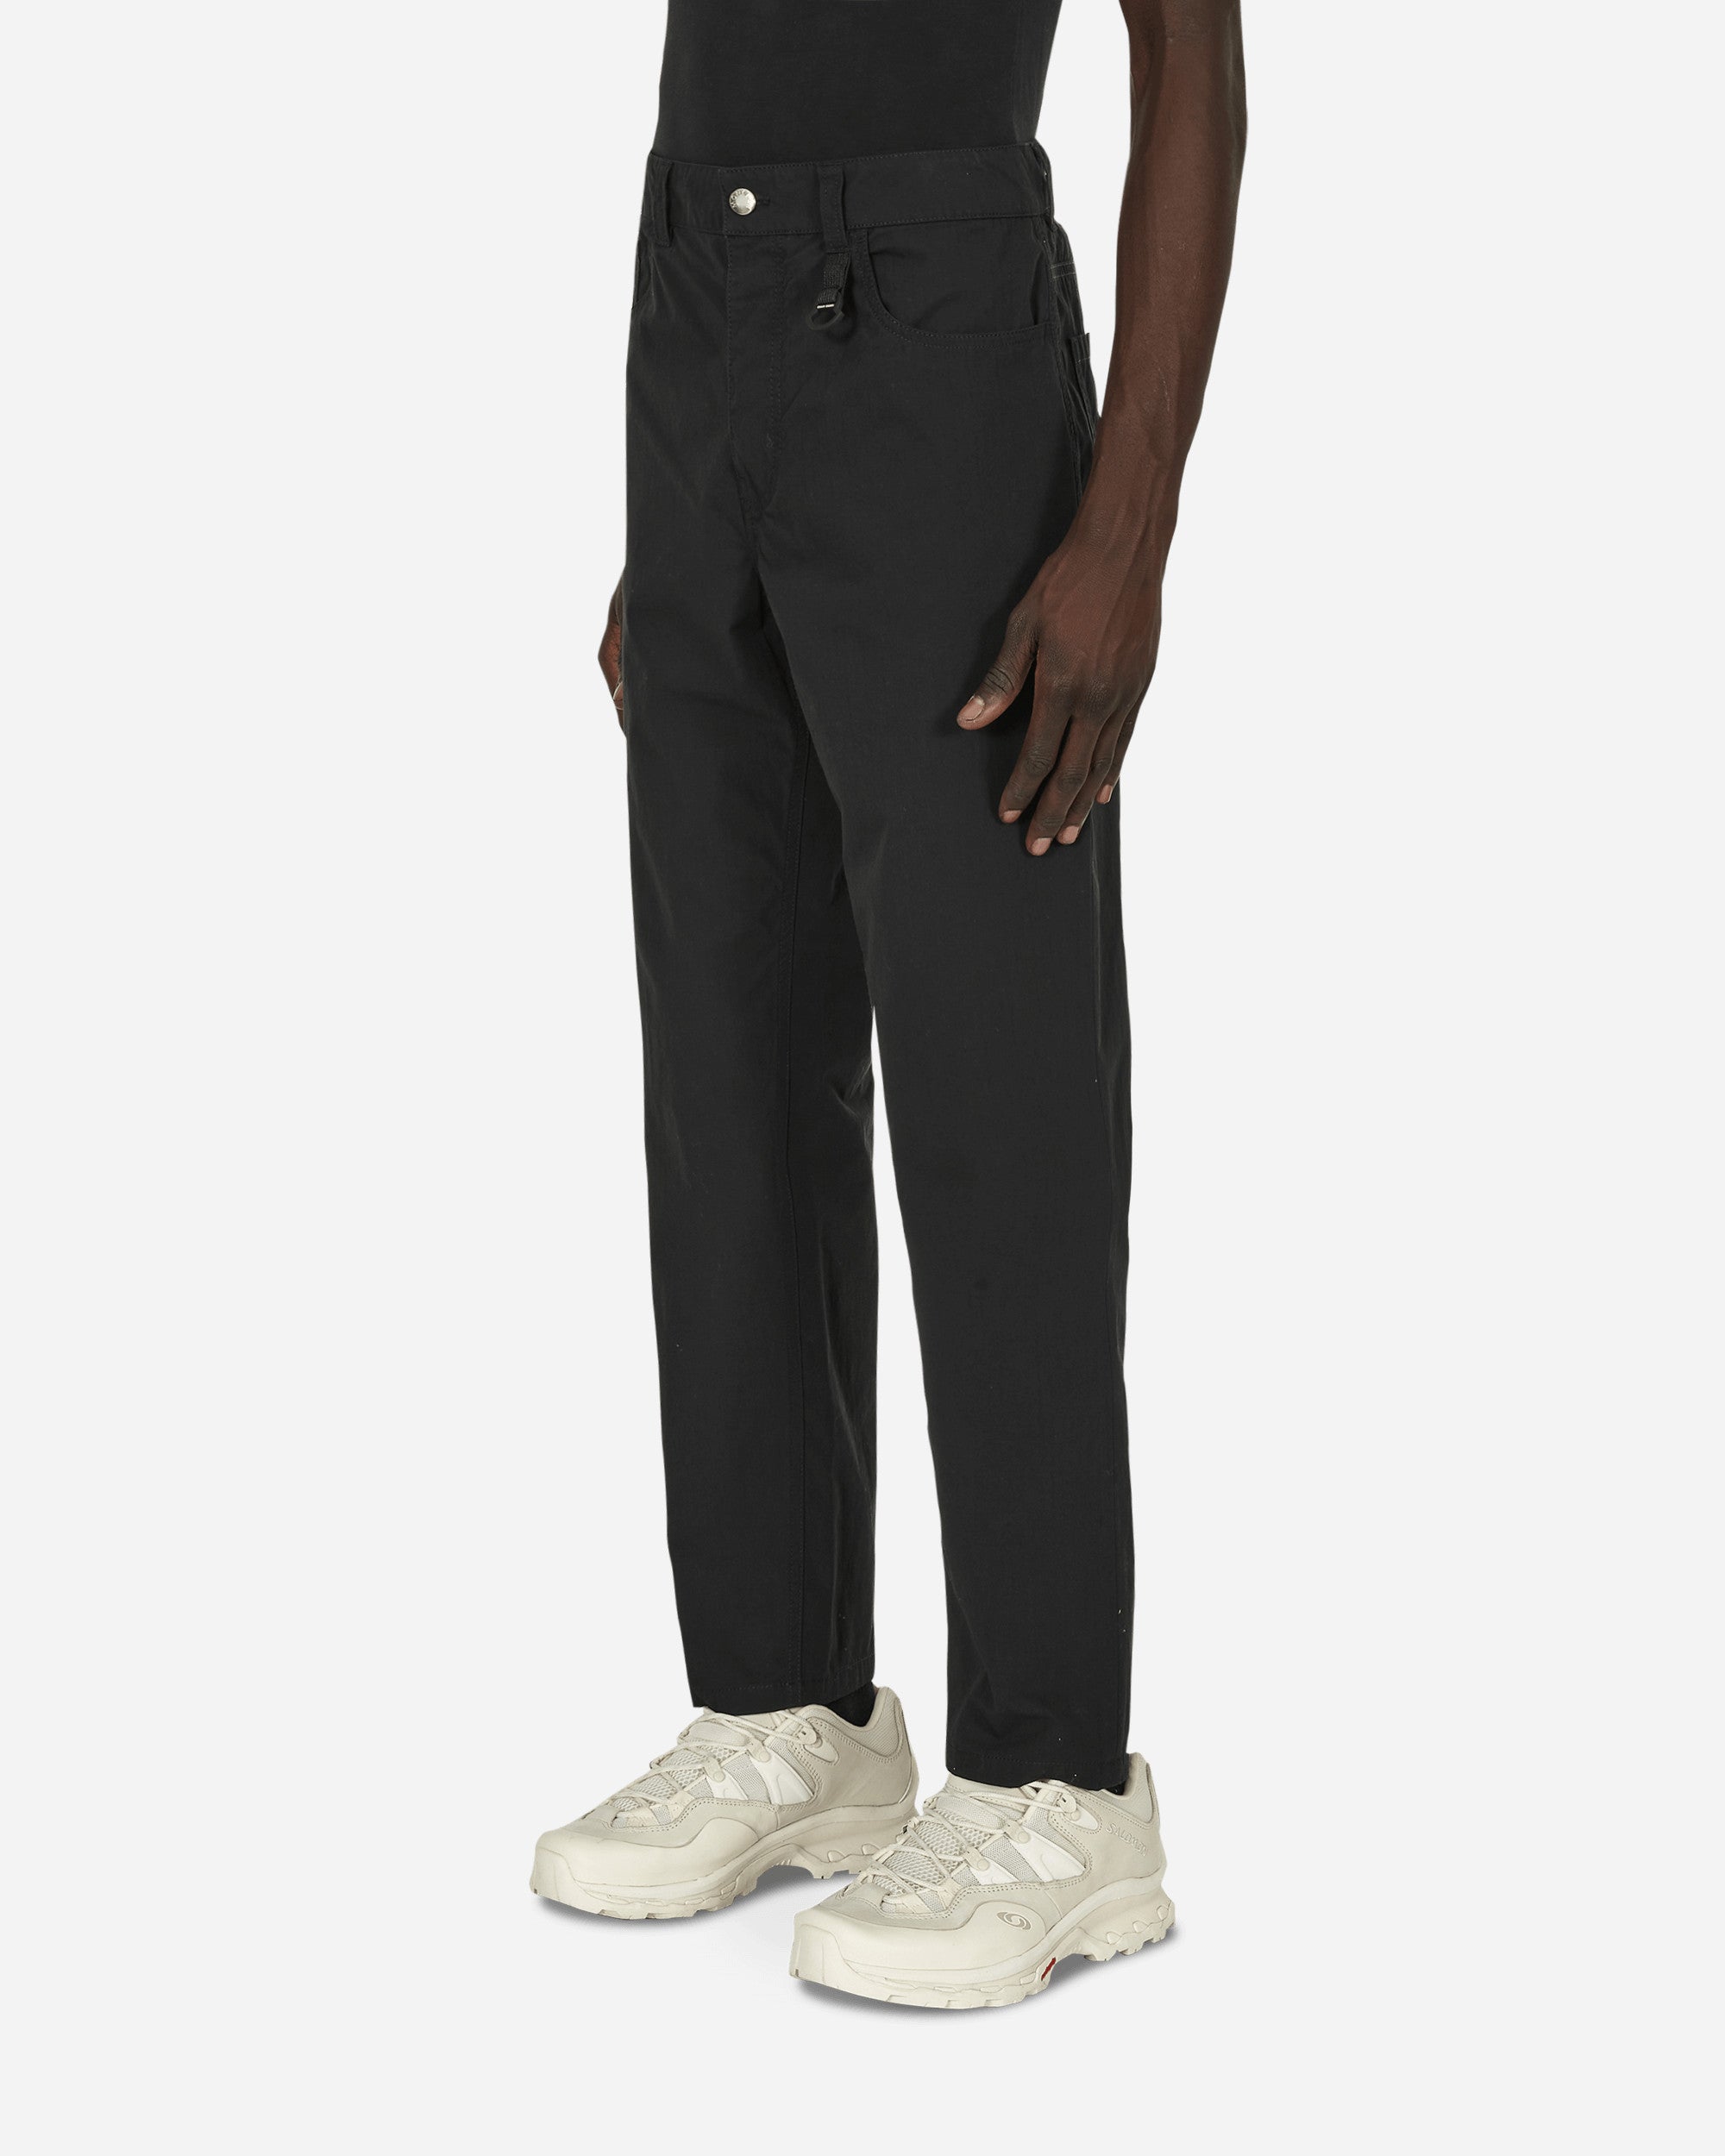 Moncler Genius Trousers Black Pants Trousers H109H2A00001 999